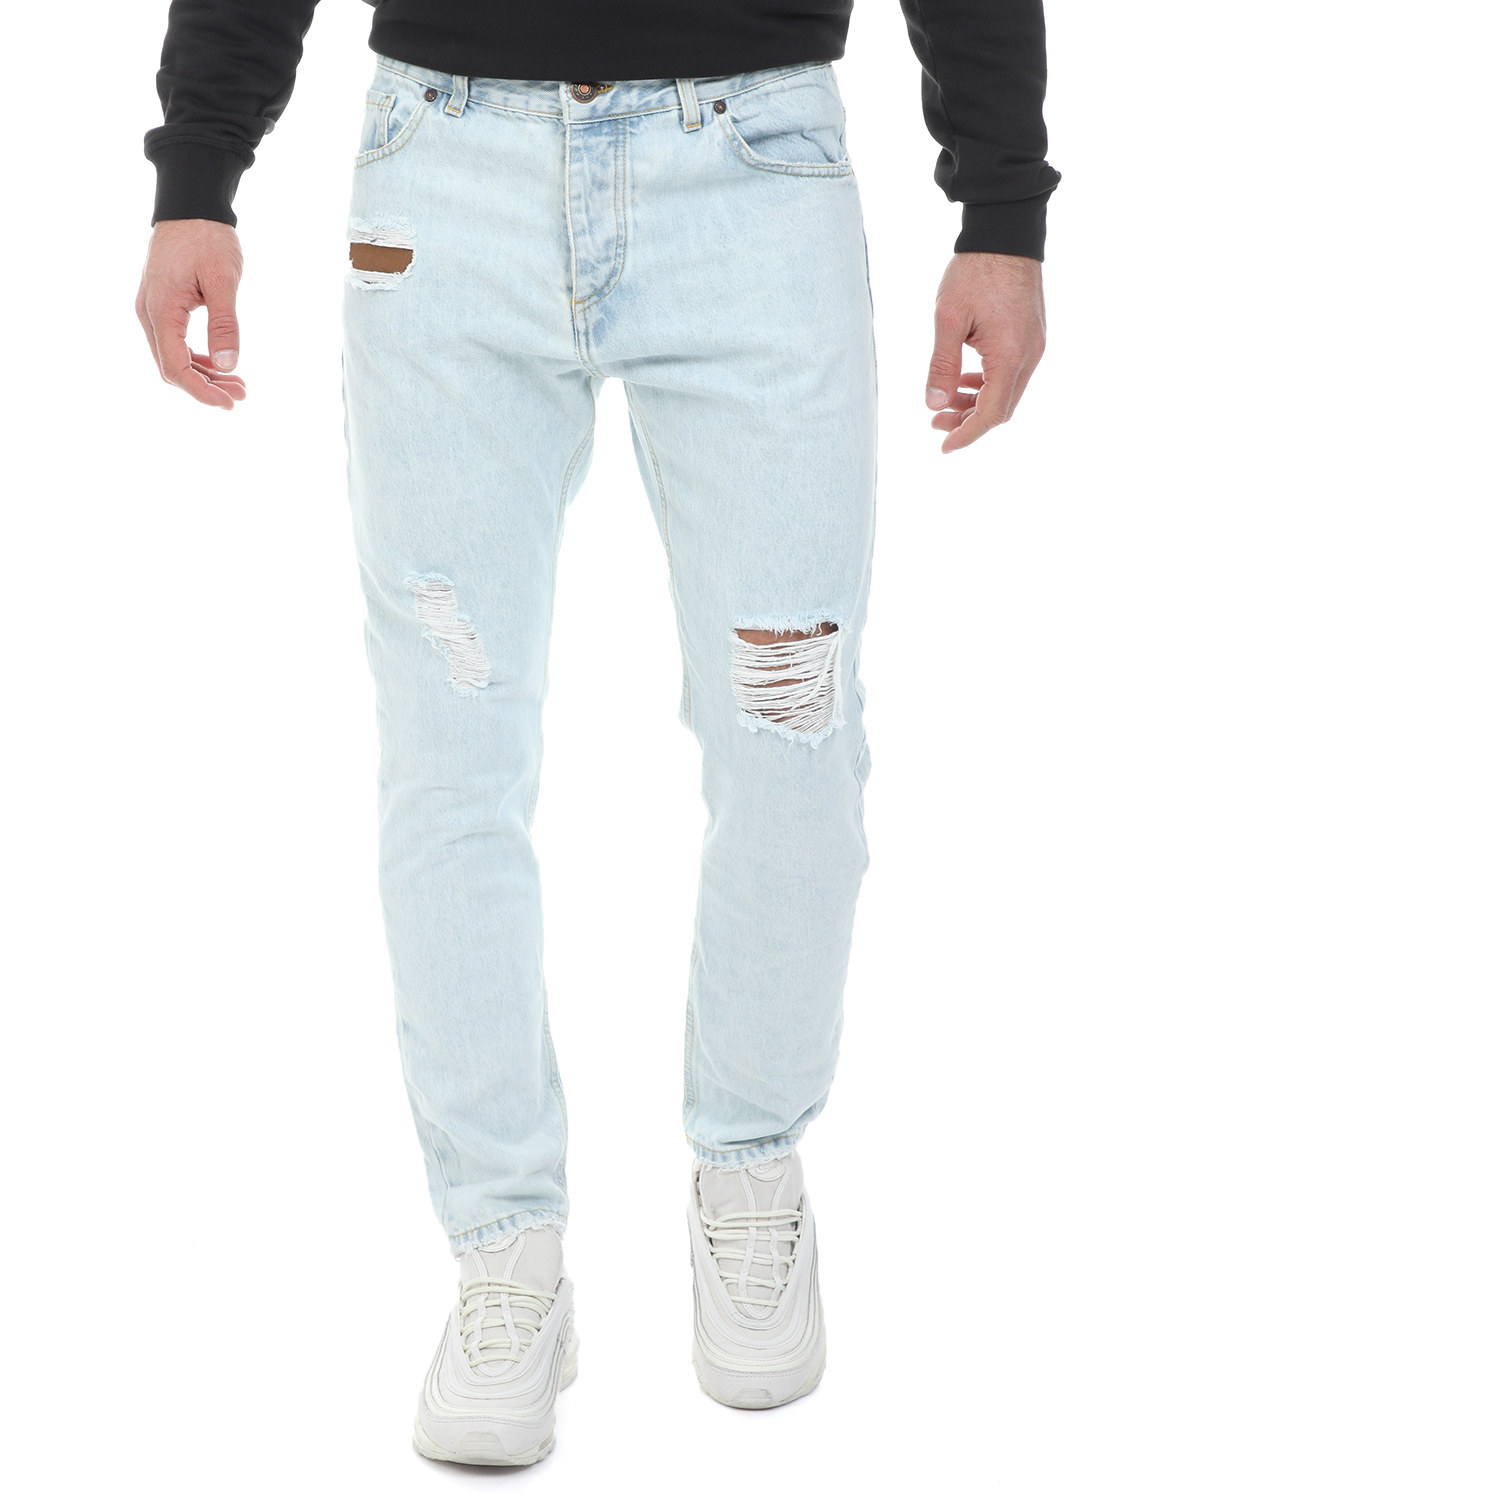 Ανδρικά/Ρούχα/Τζίν/Straight WHY NOT - Ανδρικό jean παντελόνι WHY NOT BOSTON PATCH μπλε